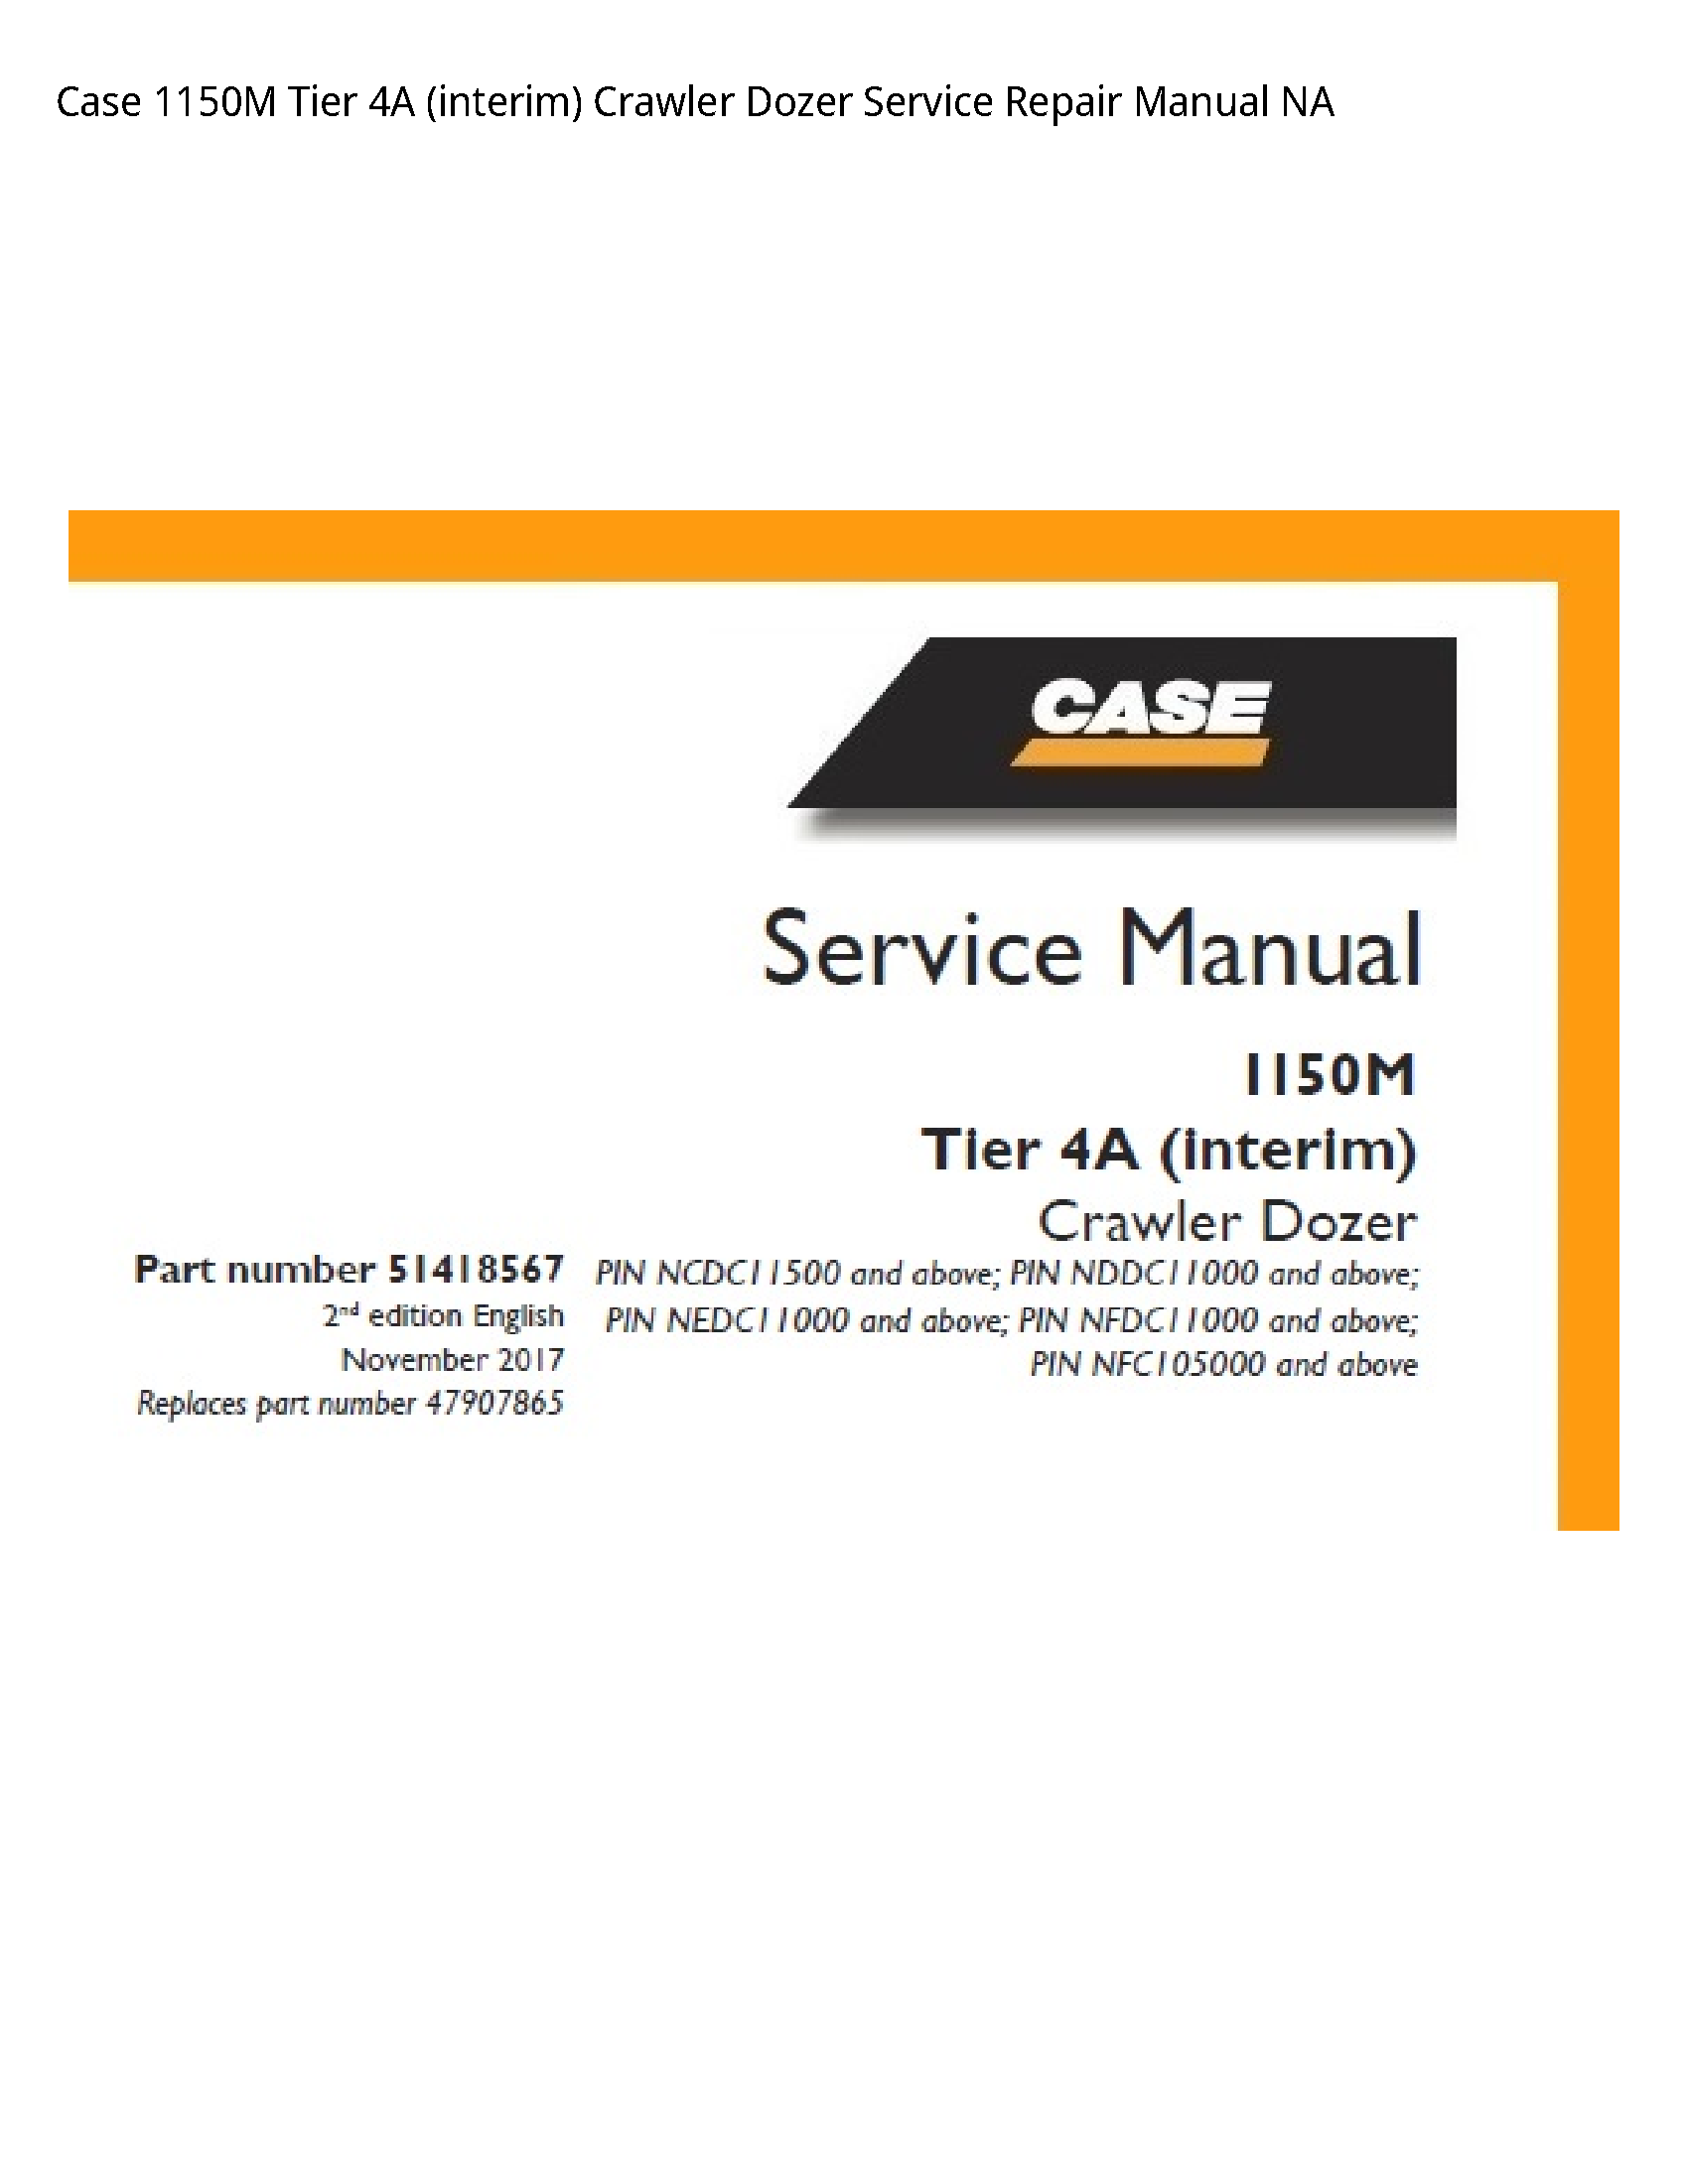 Case/Case IH 1150M Tier (interim) Crawler Dozer manual